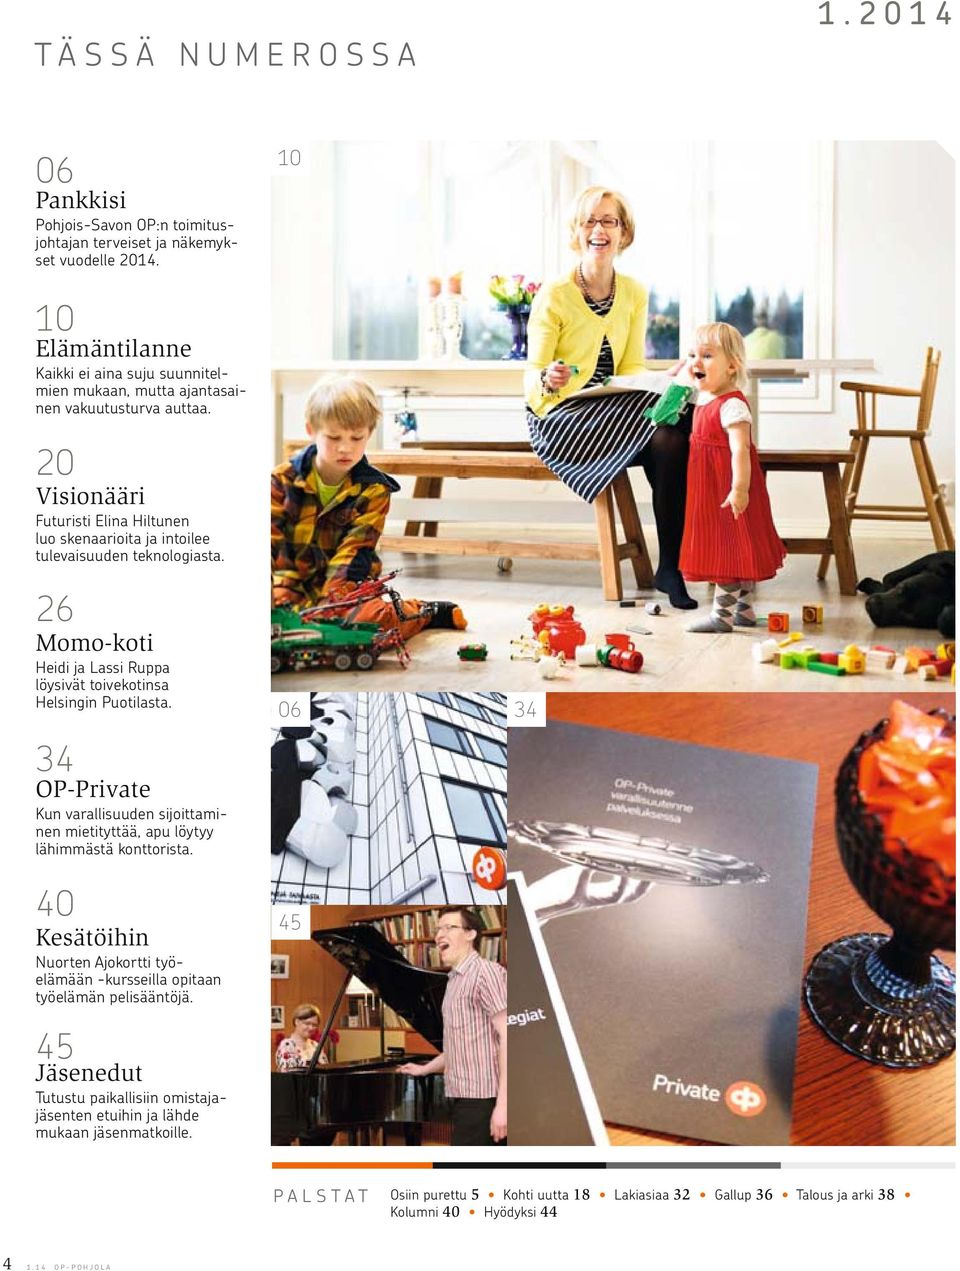 20 Visionääri Futuristi Elina Hiltunen luo skenaarioita ja intoilee tulevaisuuden teknologiasta. 26 Momo-koti Heidi ja Lassi Ruppa löysivät toivekotinsa Helsingin Puotilasta.